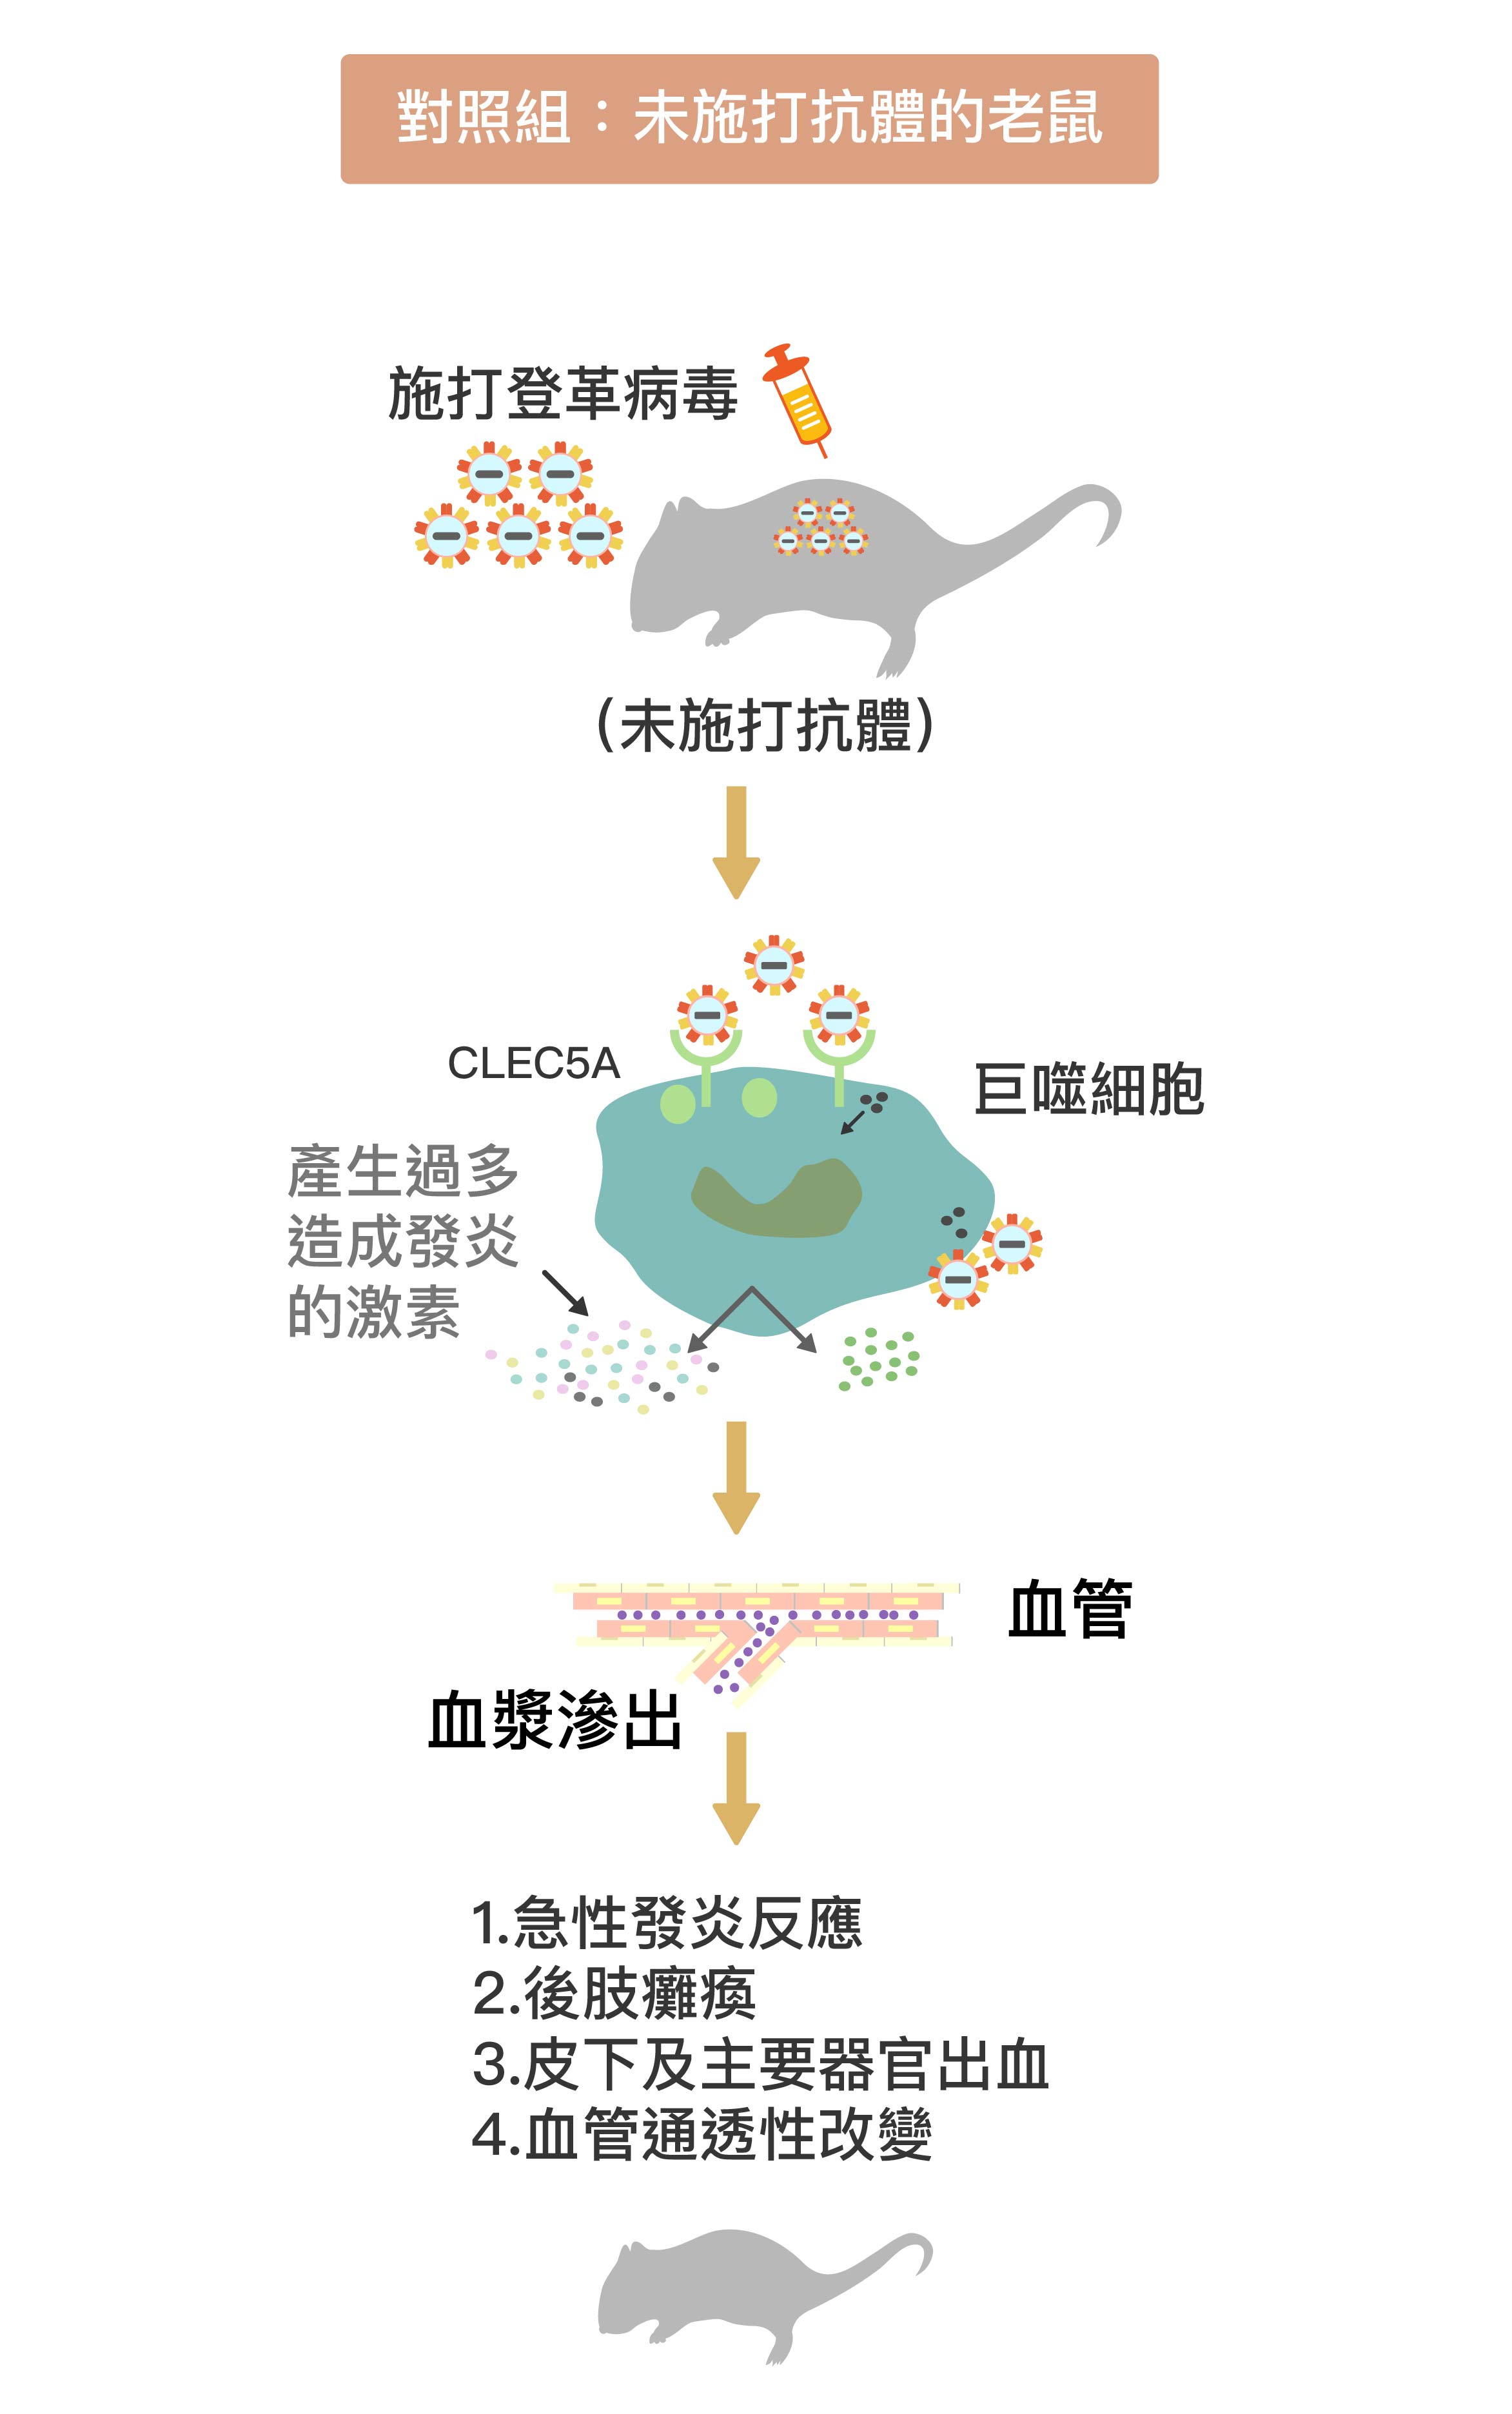 登革病毒結合巨噬細胞表面的 CLEC5A 受器，促使巨噬細胞分泌大量促進發炎的細胞激素。大量細胞激素造成更多巨噬細胞聚集，形成「細胞激素風暴」，促使小鼠過度發炎、血管通透性暴增，血漿滲出血管外，出現登革出血熱症狀。圖│研之有物 (資料來源│謝世良)